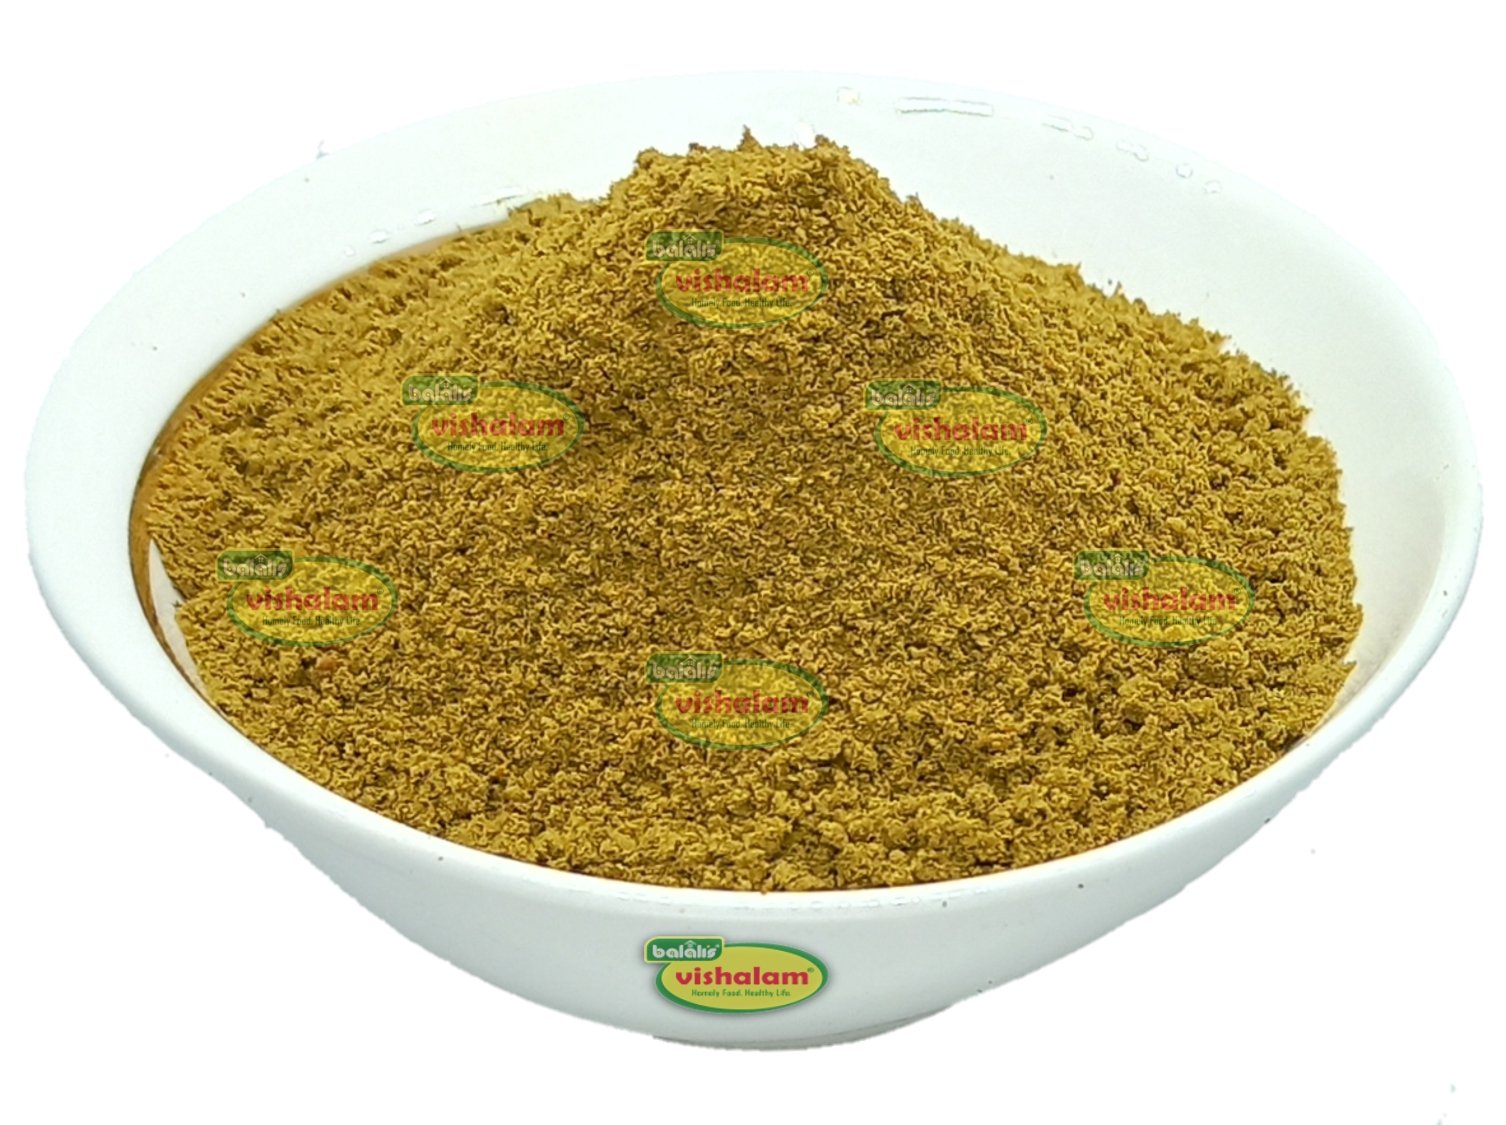 Curry Leaf Rice Mix - Balali's Vishalam